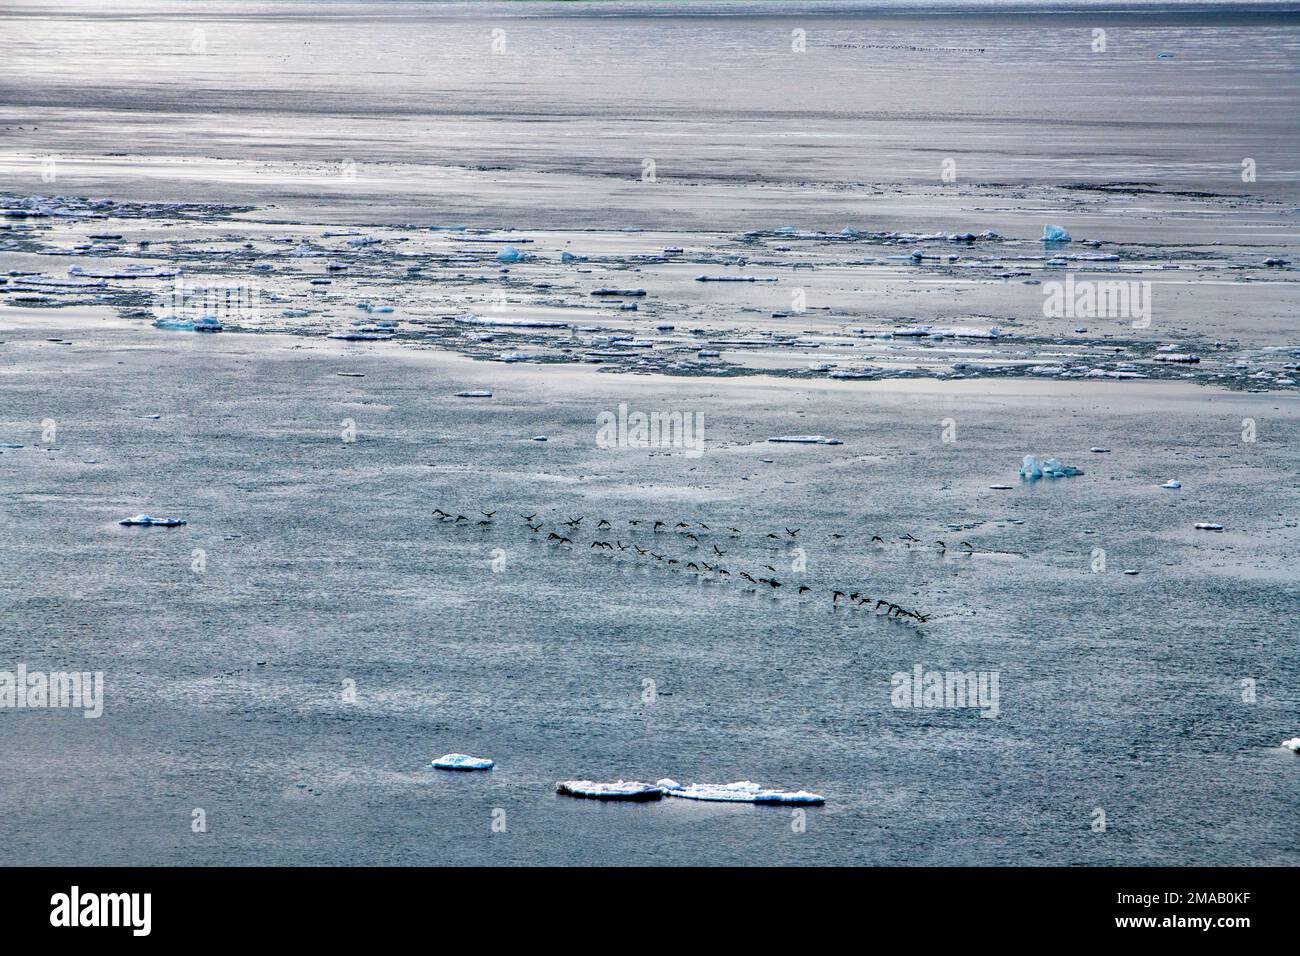 Polarvögel fliegen in der Nähe von Storoya, Svalbard. Expeditions-Kreuzfahrtschiff Greg Mortimer in Svalbard-Archipel, Nordnorwegen. Storøya ist eine Insel in Th Stockfoto